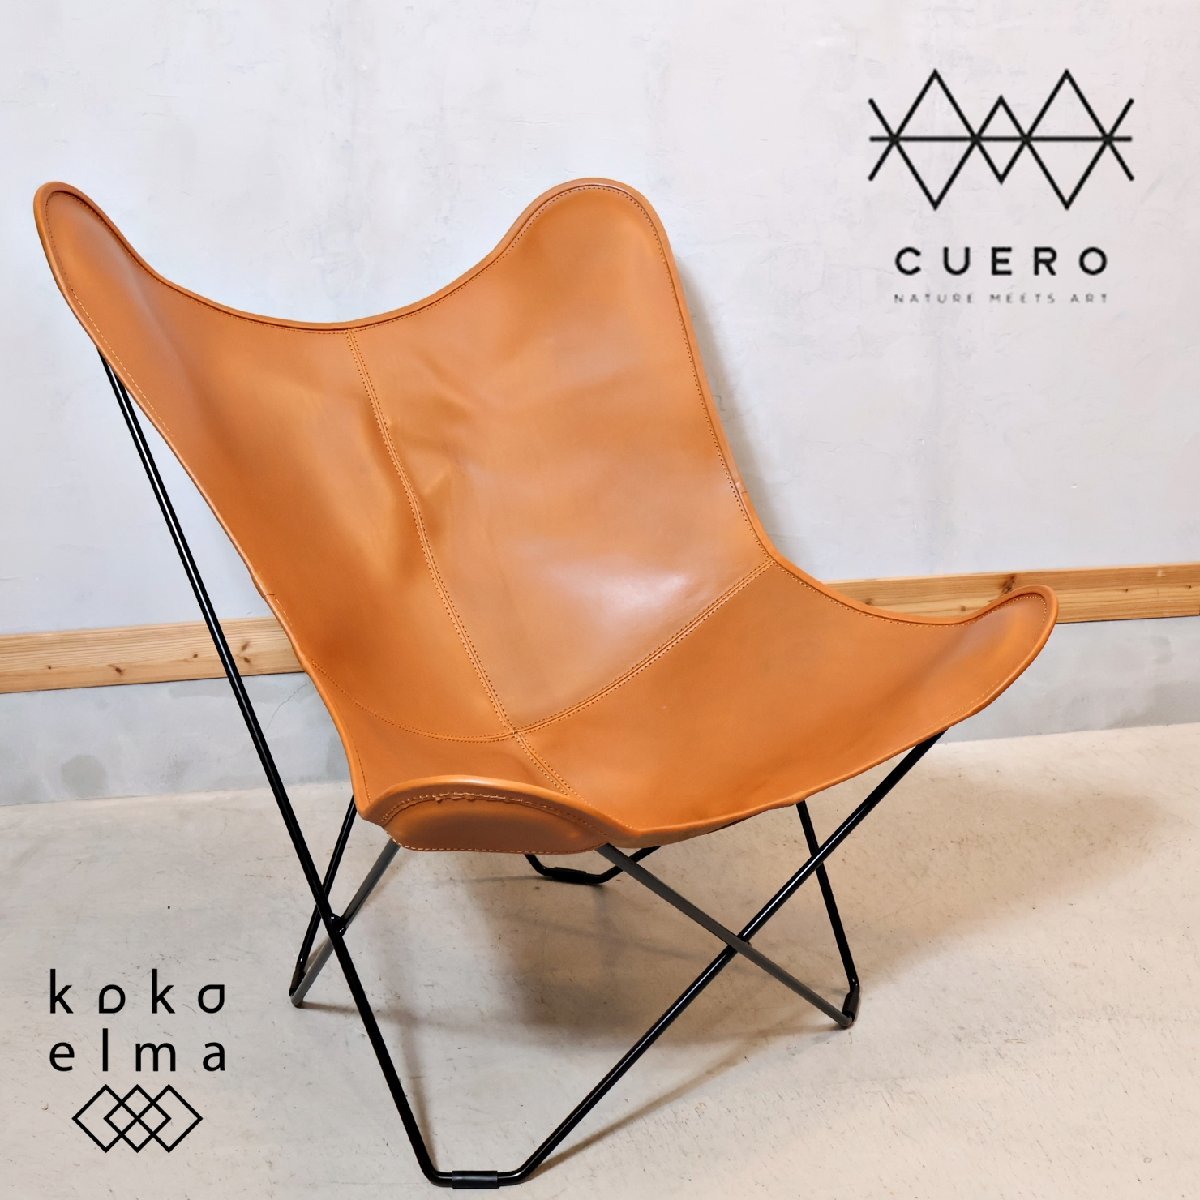  не использовался товар CuerokeroBKF стул бабочка стул натуральная кожа Мали posa персональный стул кожа lounge стул Северная Европа мебель kyueroEB119